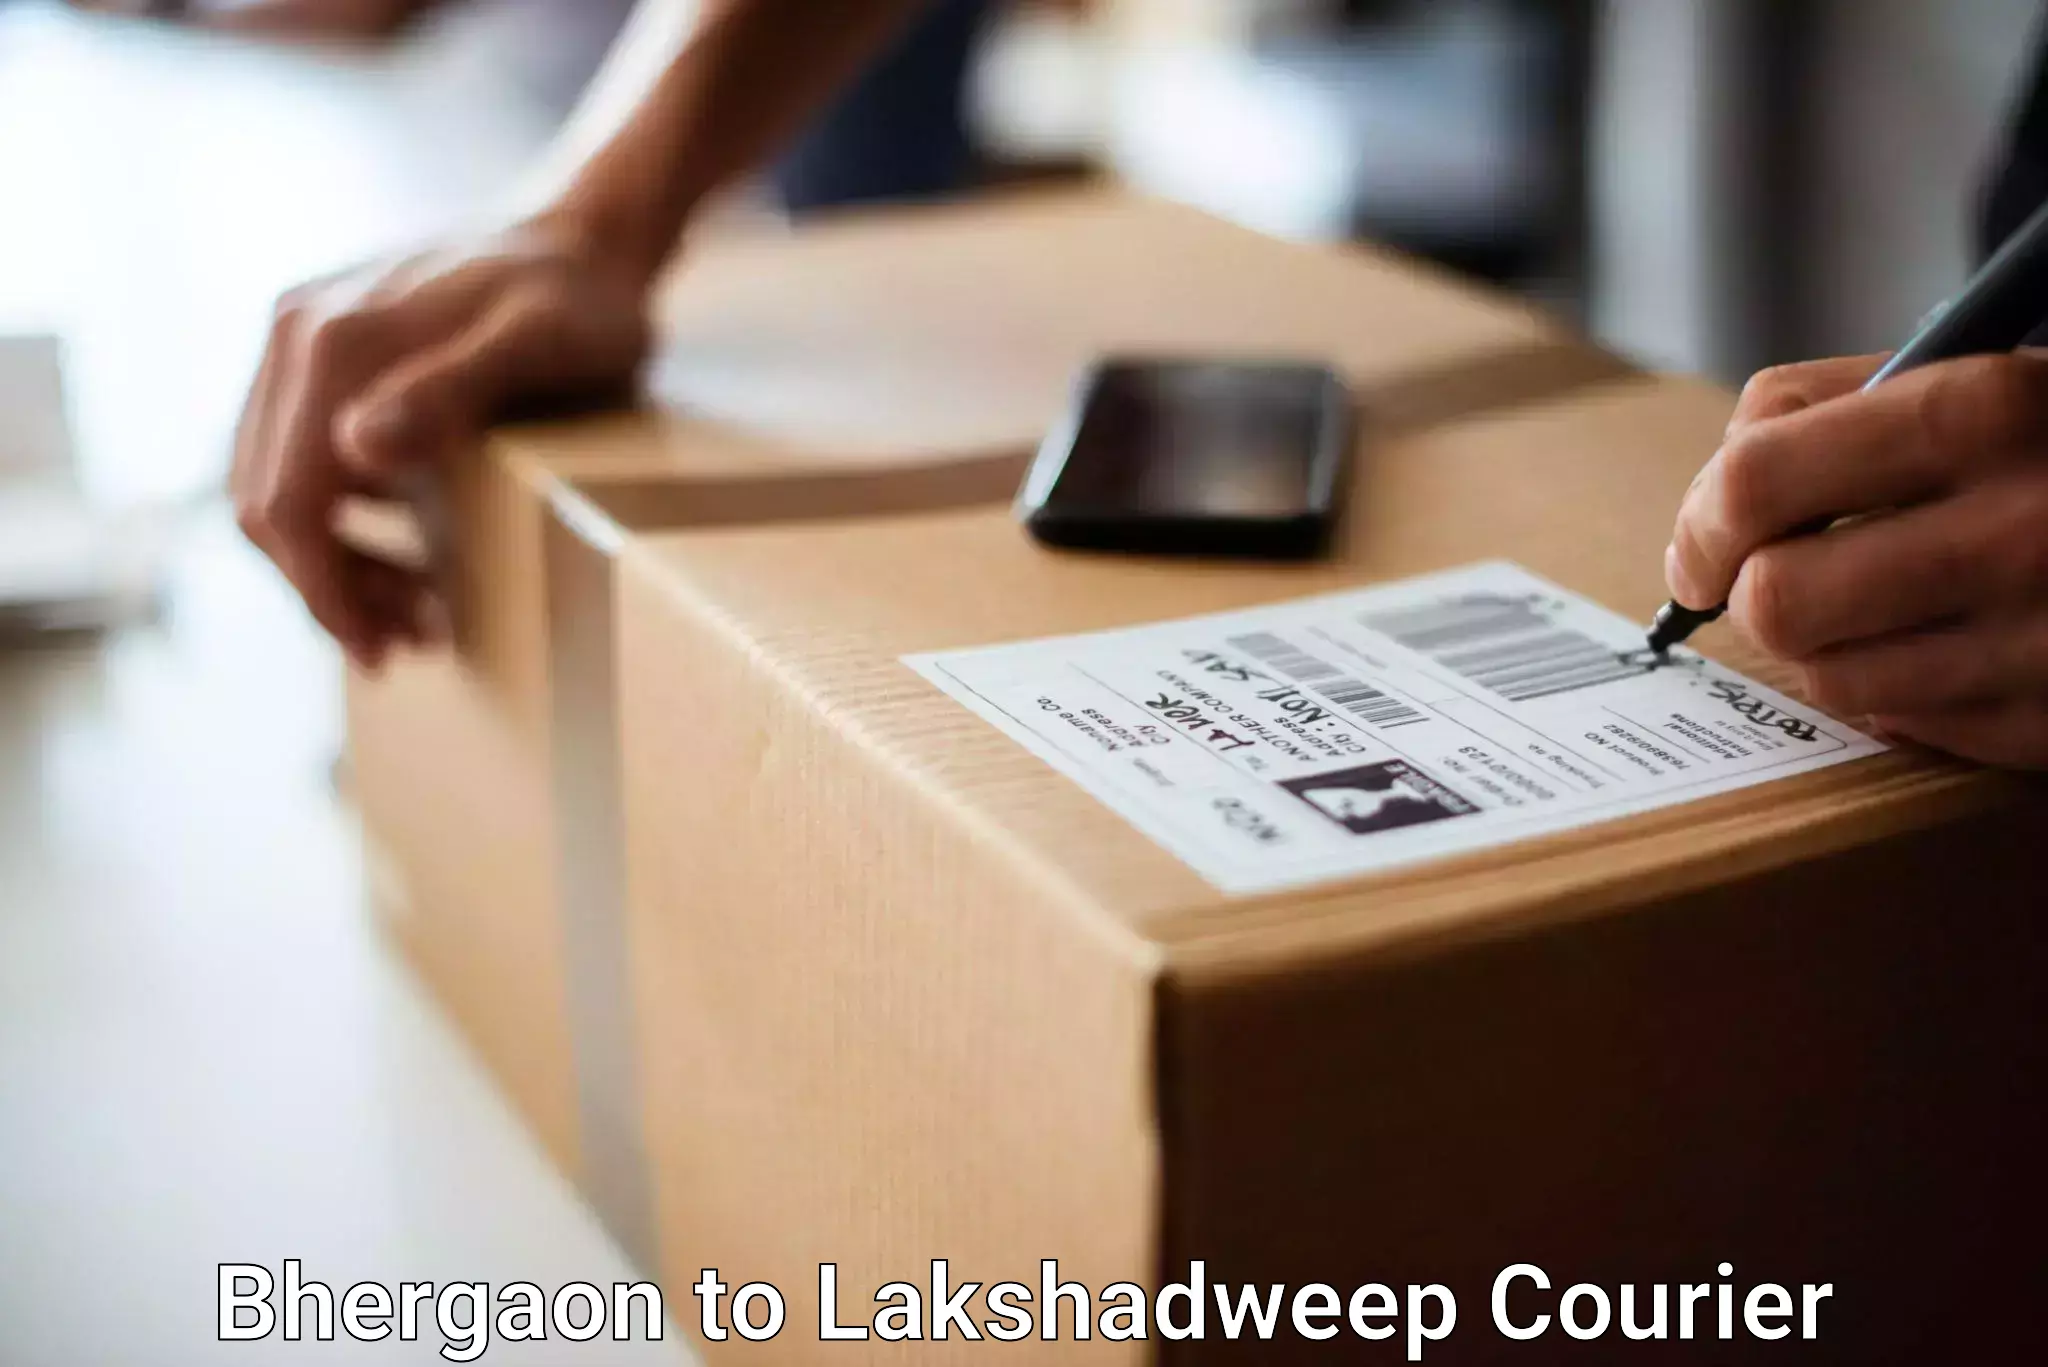 Luggage transit service Bhergaon to Lakshadweep